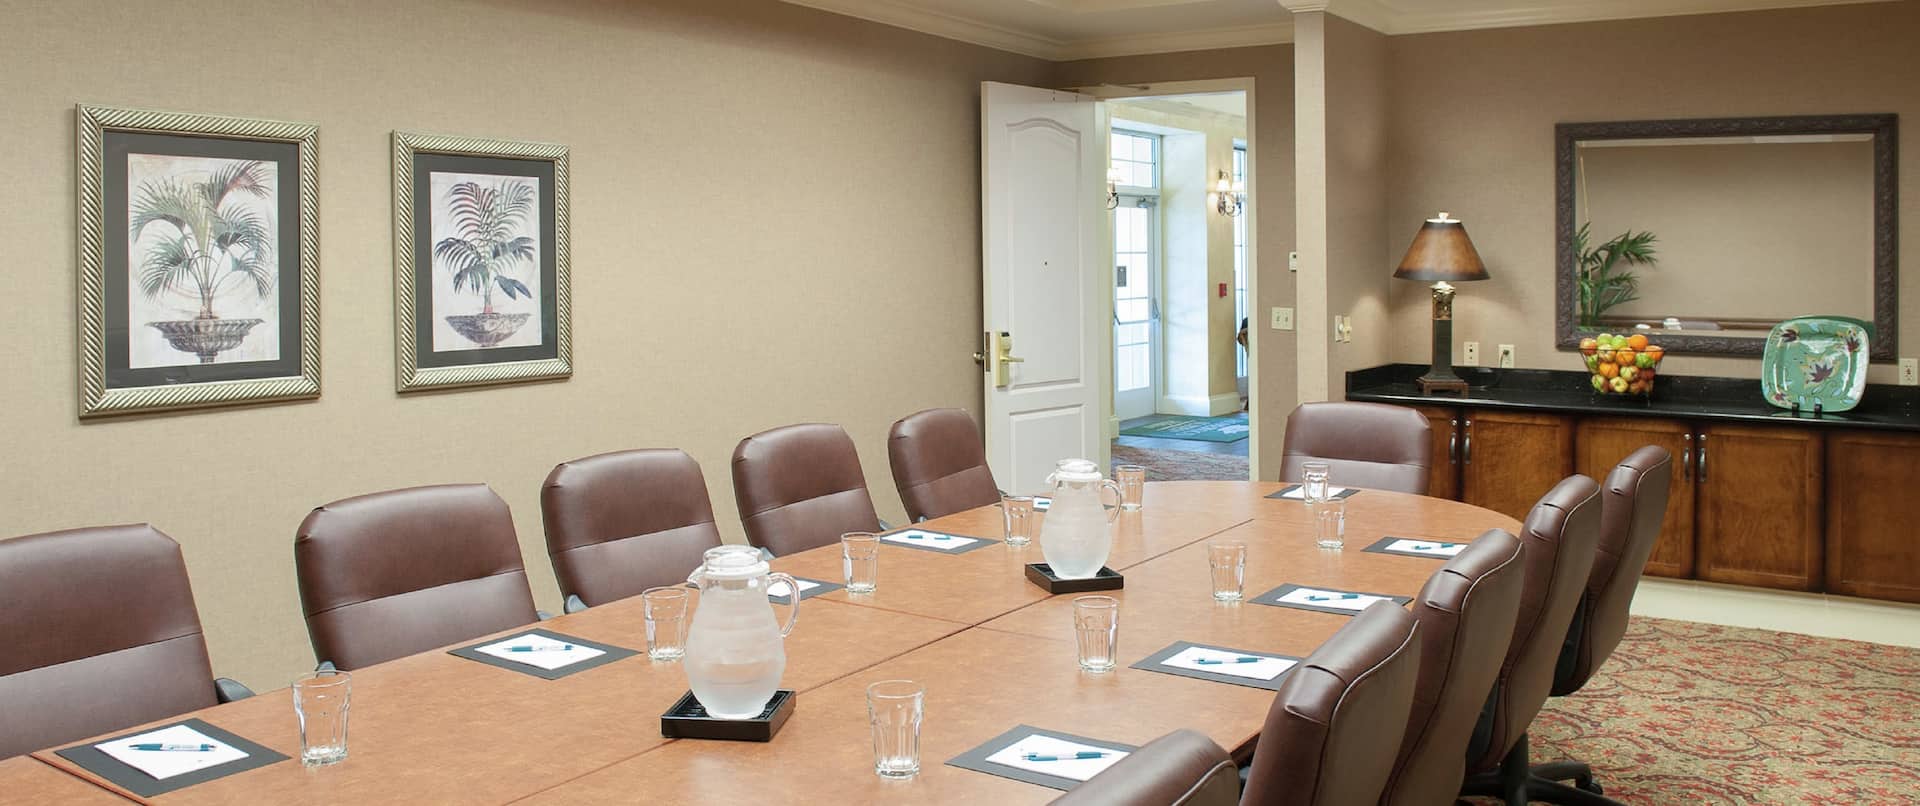 Boardroom Meeting Space